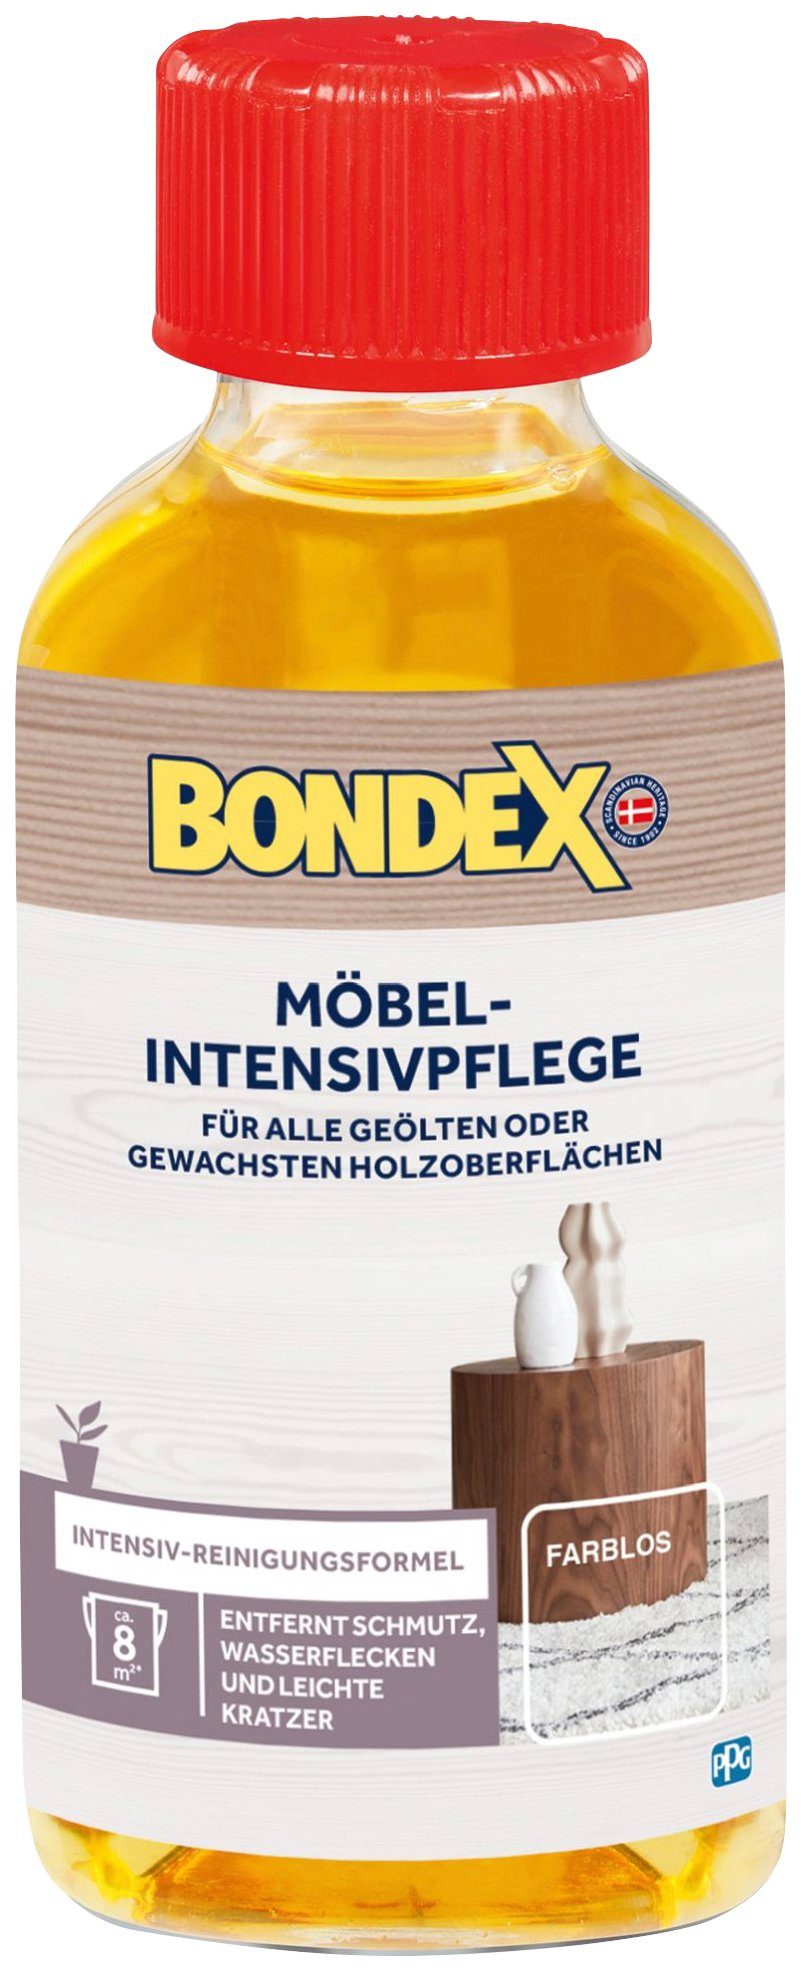 Bondex MÖBEL-INTENSIVPFLEGE Farblos l Holzpflegeöl, 0,15